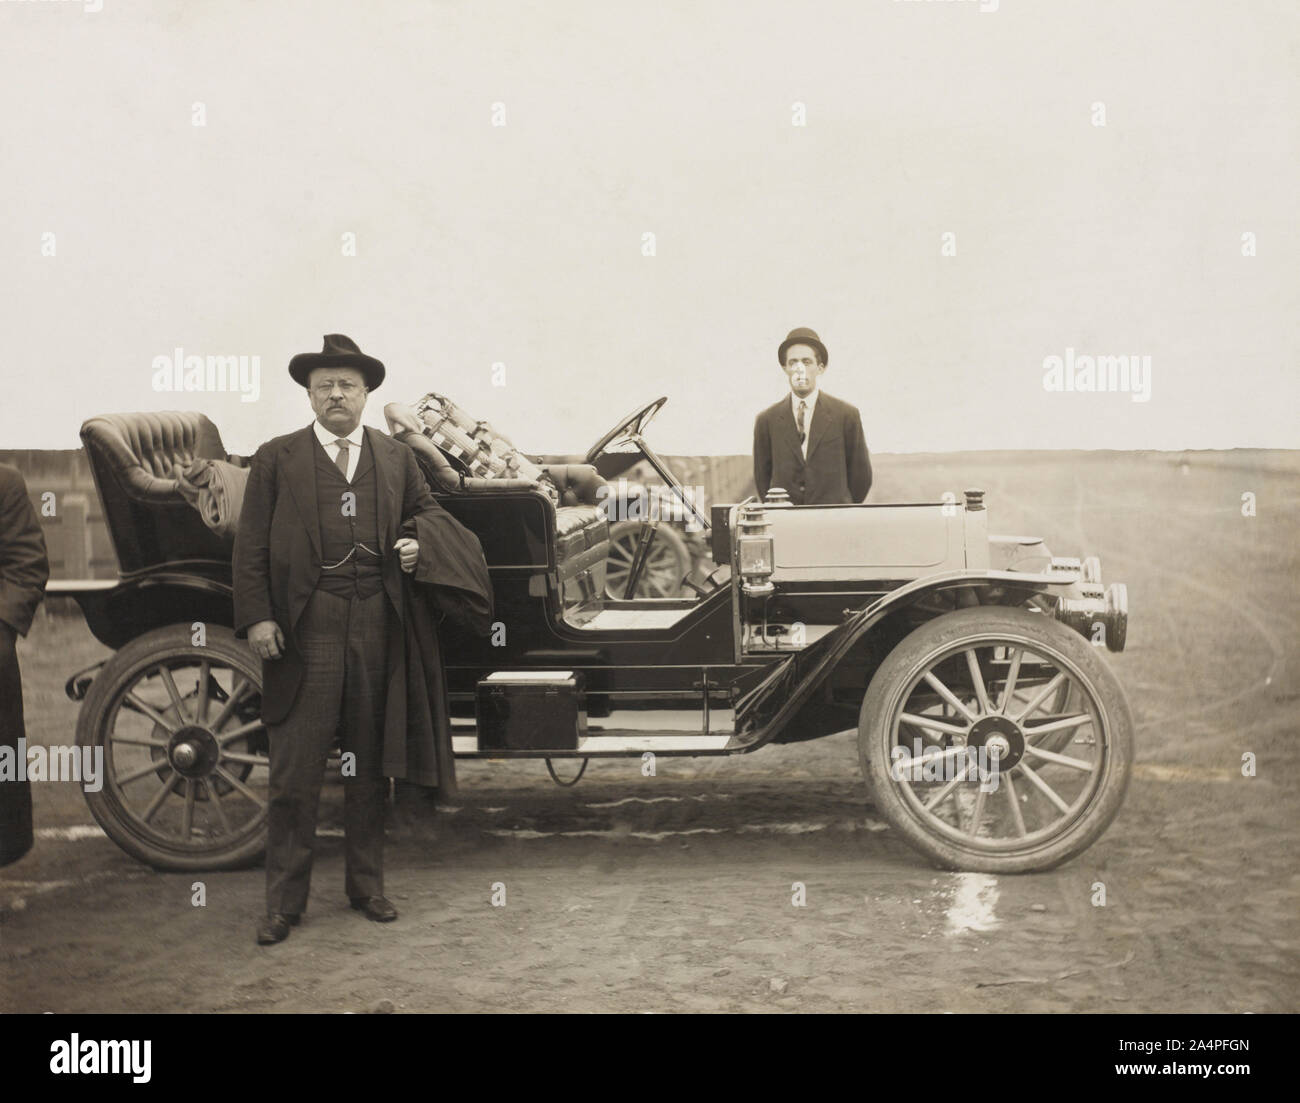 Theodore Roosevelt in piedi nella parte anteriore dell'Automobile, Sioux Falls, Dakota del Sud, STATI UNITI D'AMERICA, fotografia di W. E. Hannah, 1910 Foto Stock